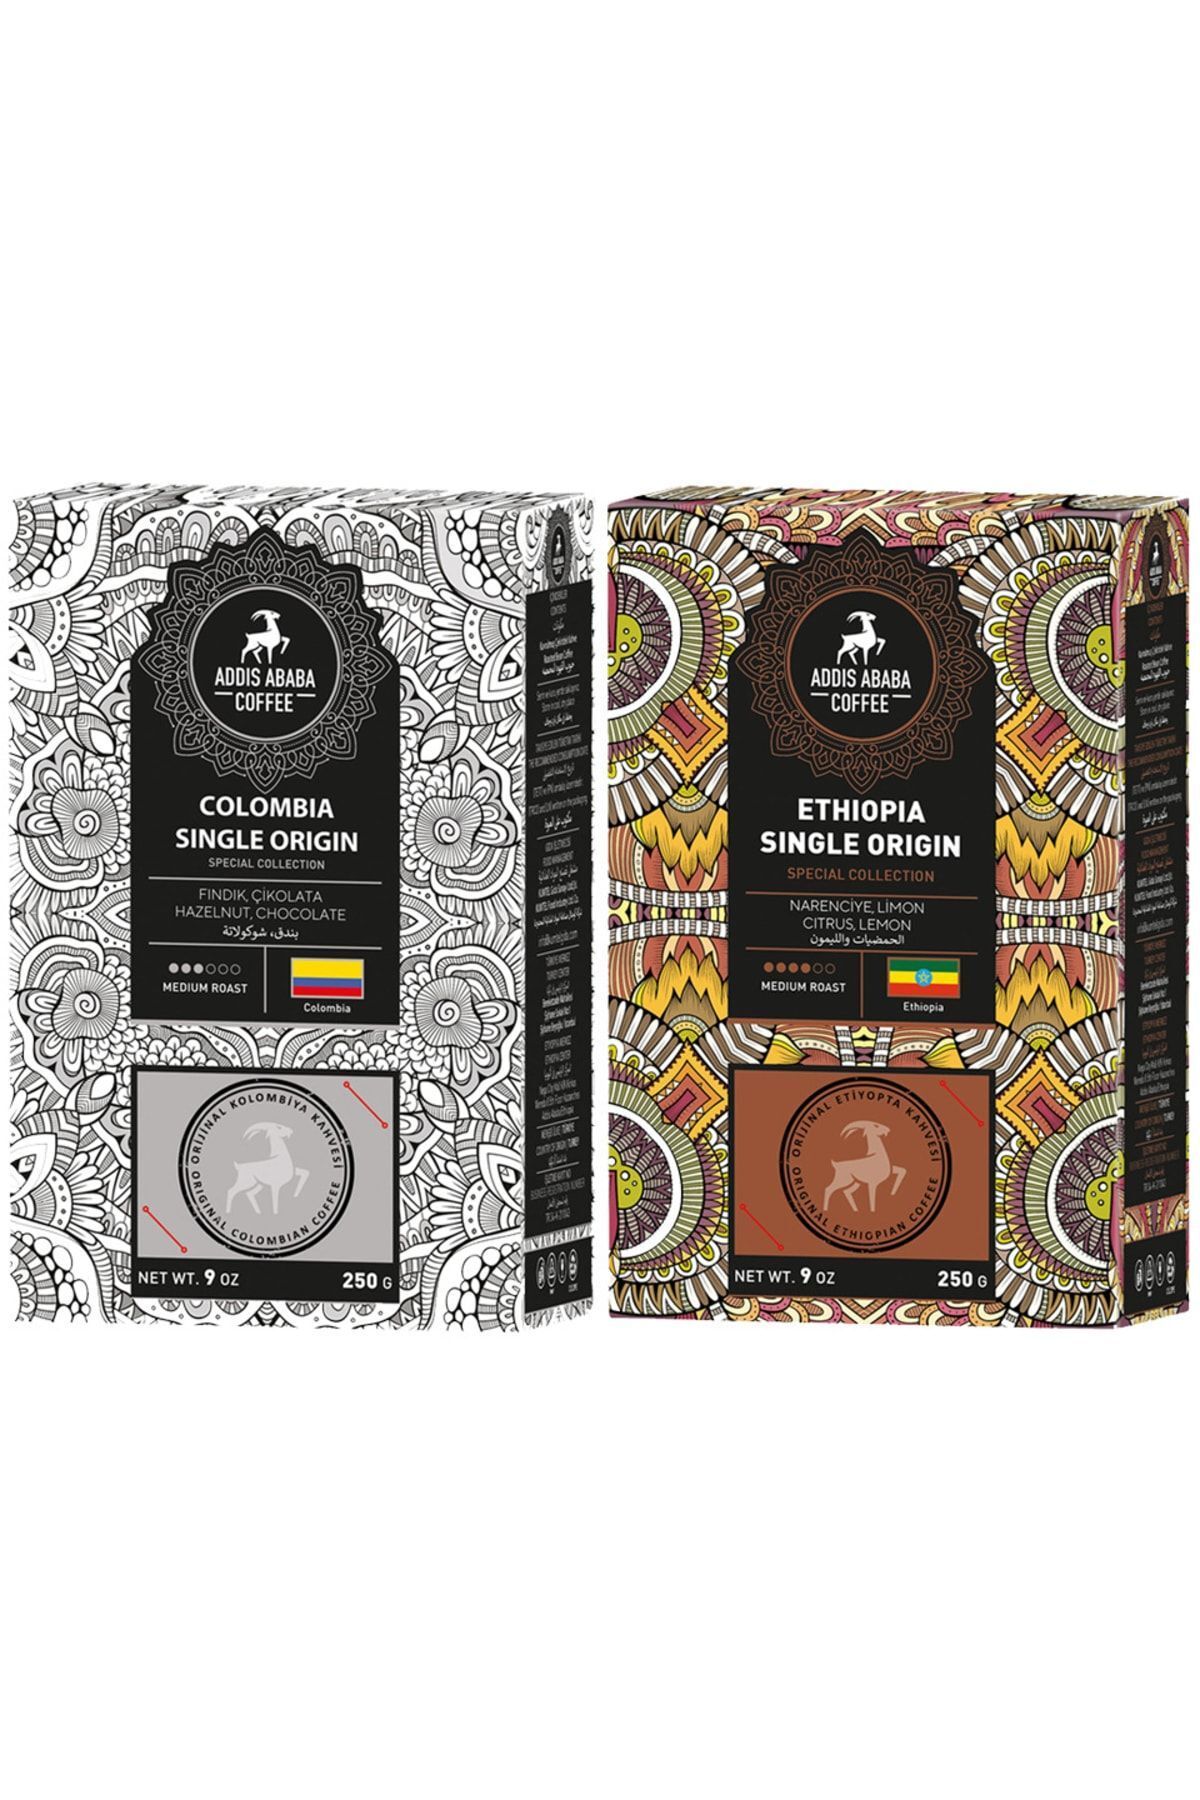 Addis Ababa Coffee Kolombiya Ve Etiyopya Single Origin Avantajlı Paket